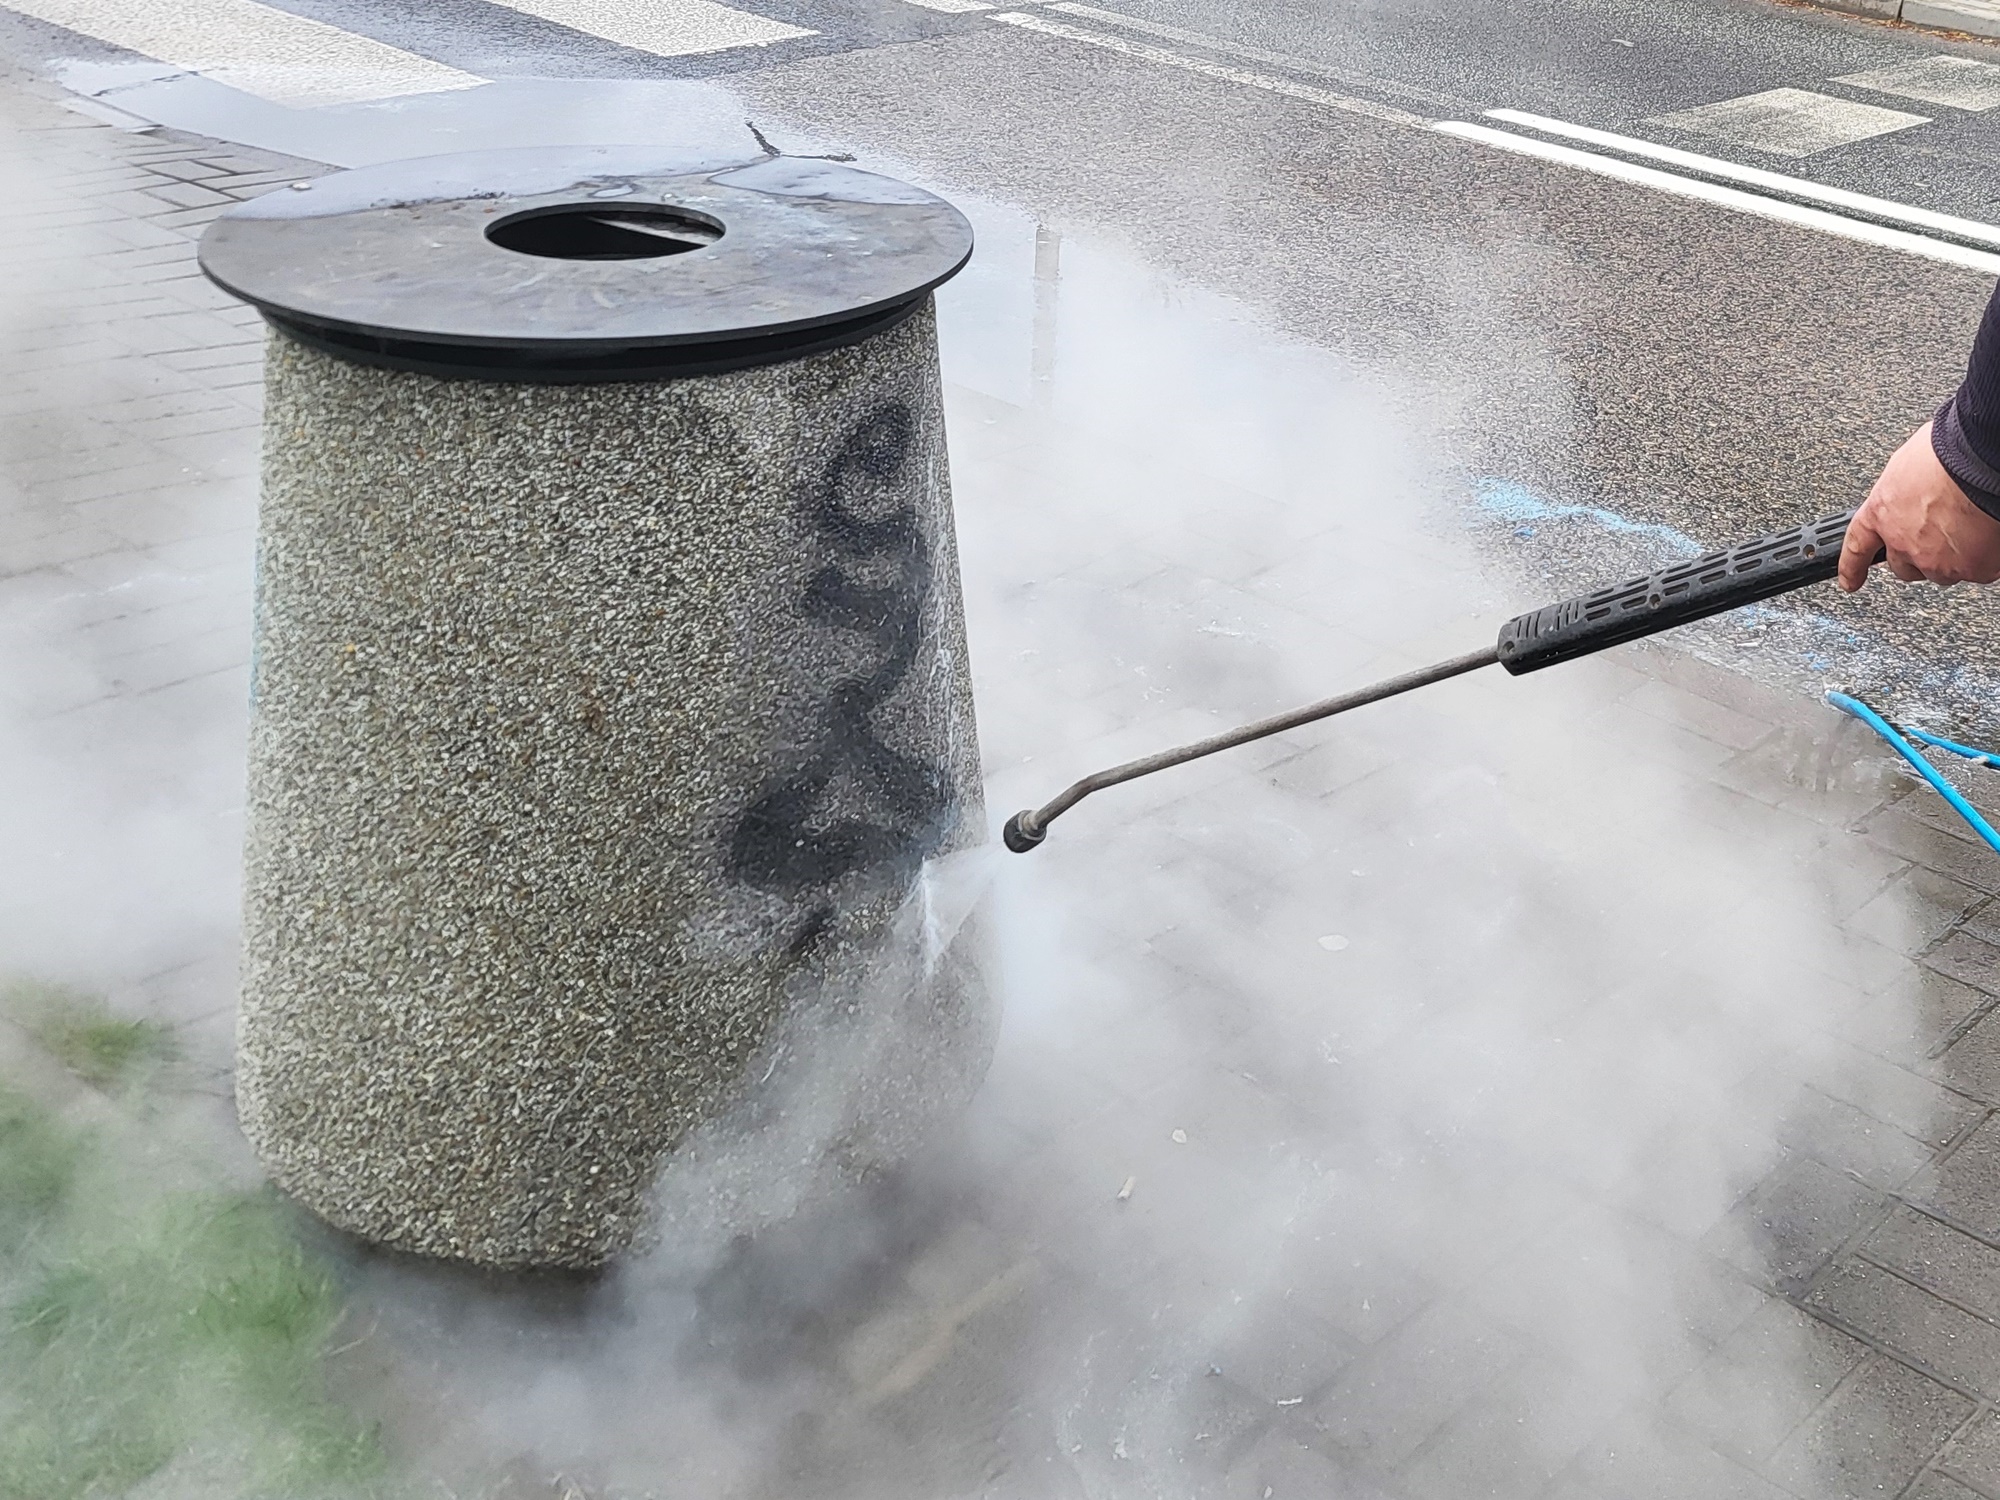 Pomazany betonowy kosz na chodniku, widać myjkę, z której woda pod ciśnieniem czyści powierzchnię kosza